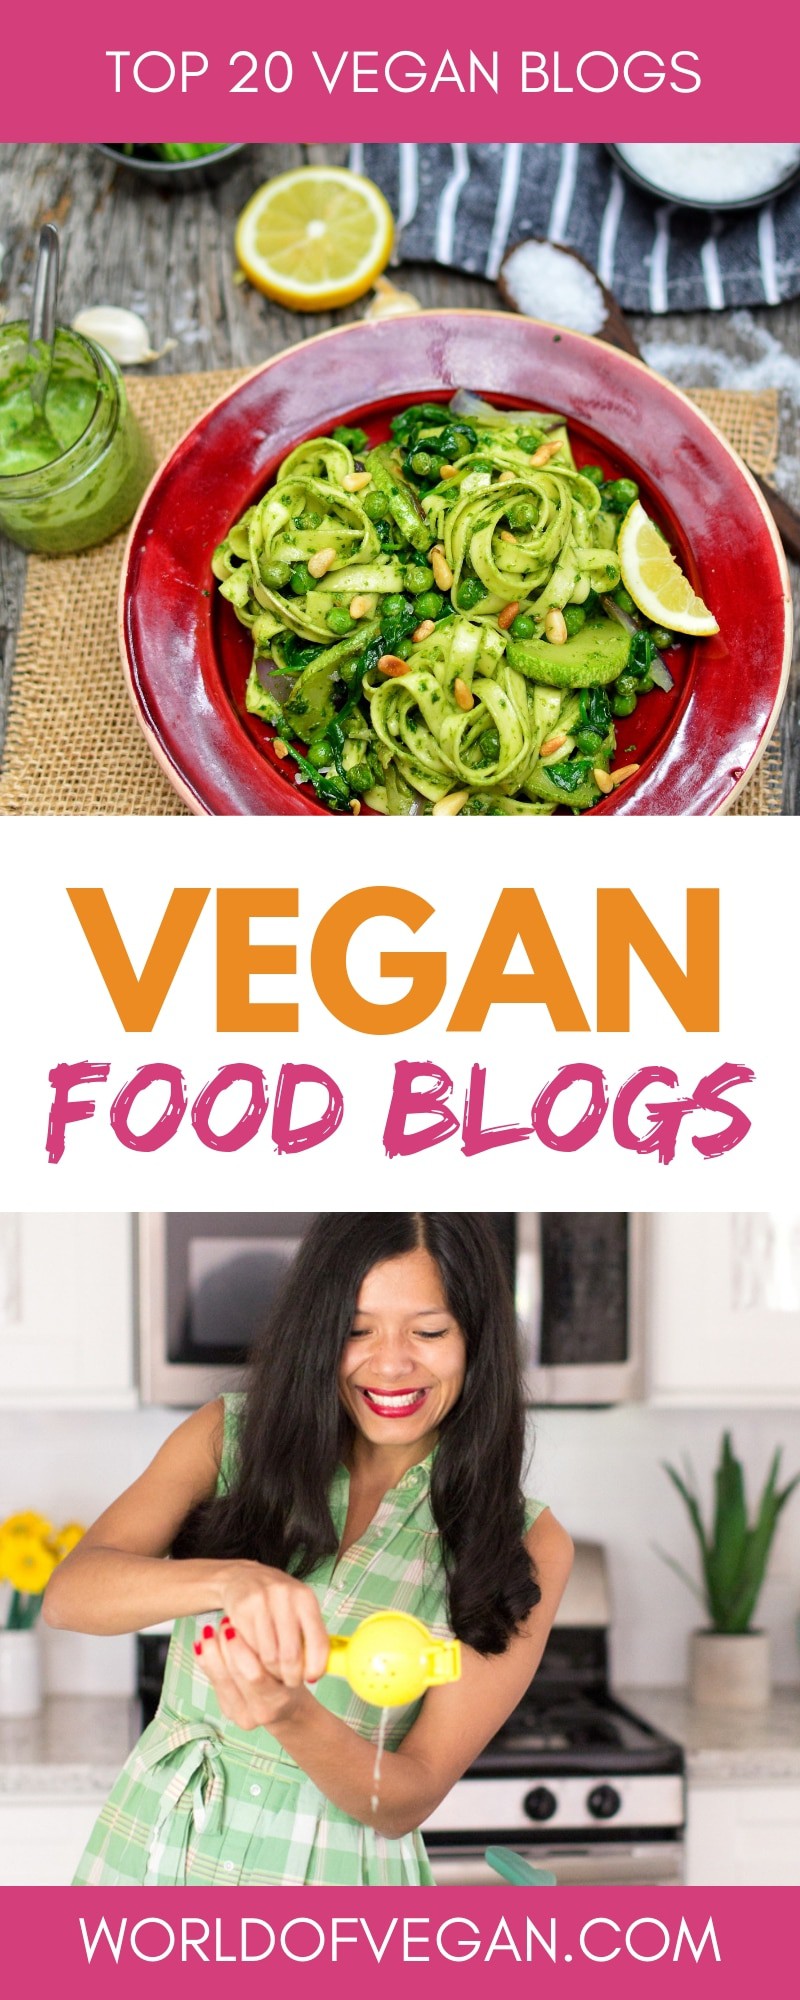 Top 20 Vegan Food Blogs | WorldofVegan.com | #food #vegan #vegetarian #blogs 